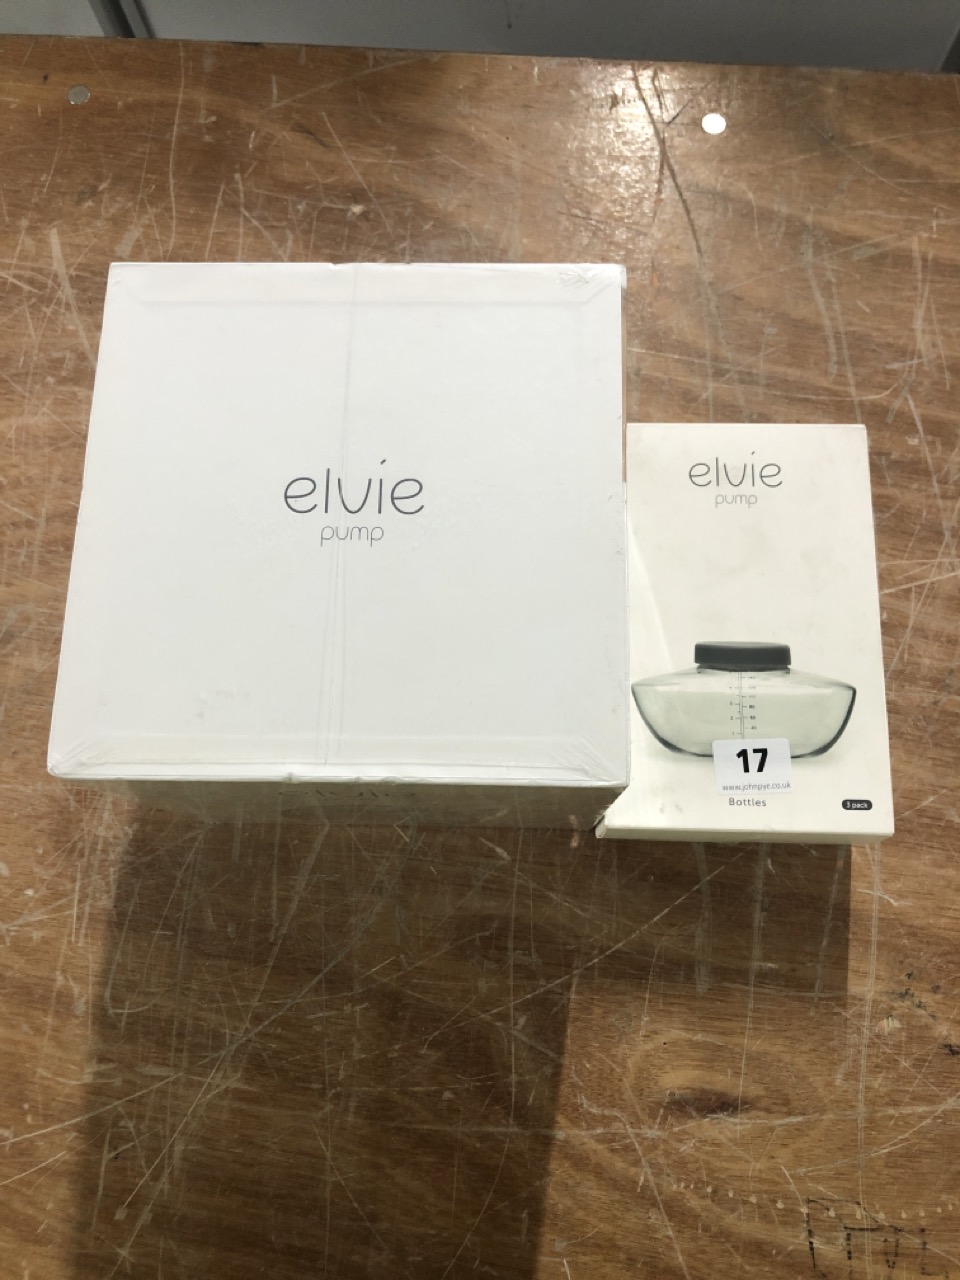 Elvie - Pump Bottles (3 Pack)